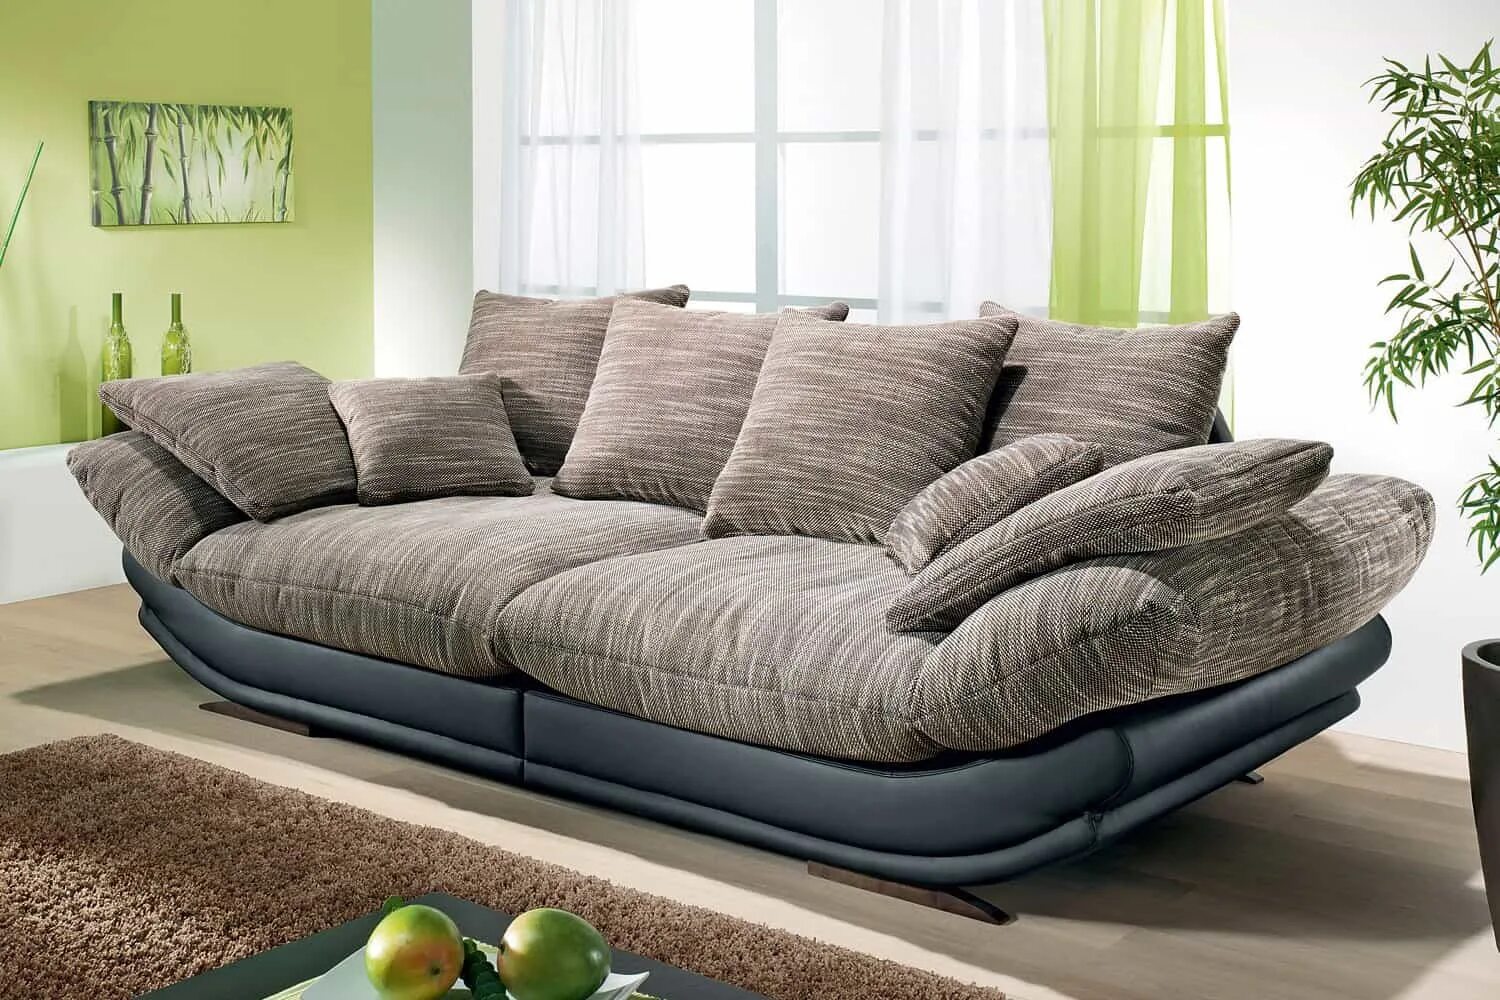 Авиньон макси диван. Красивый стильный диван. Современный мягкий диван. Красивые диваны для гостиной. Диваны купить в москве в интернет магазине